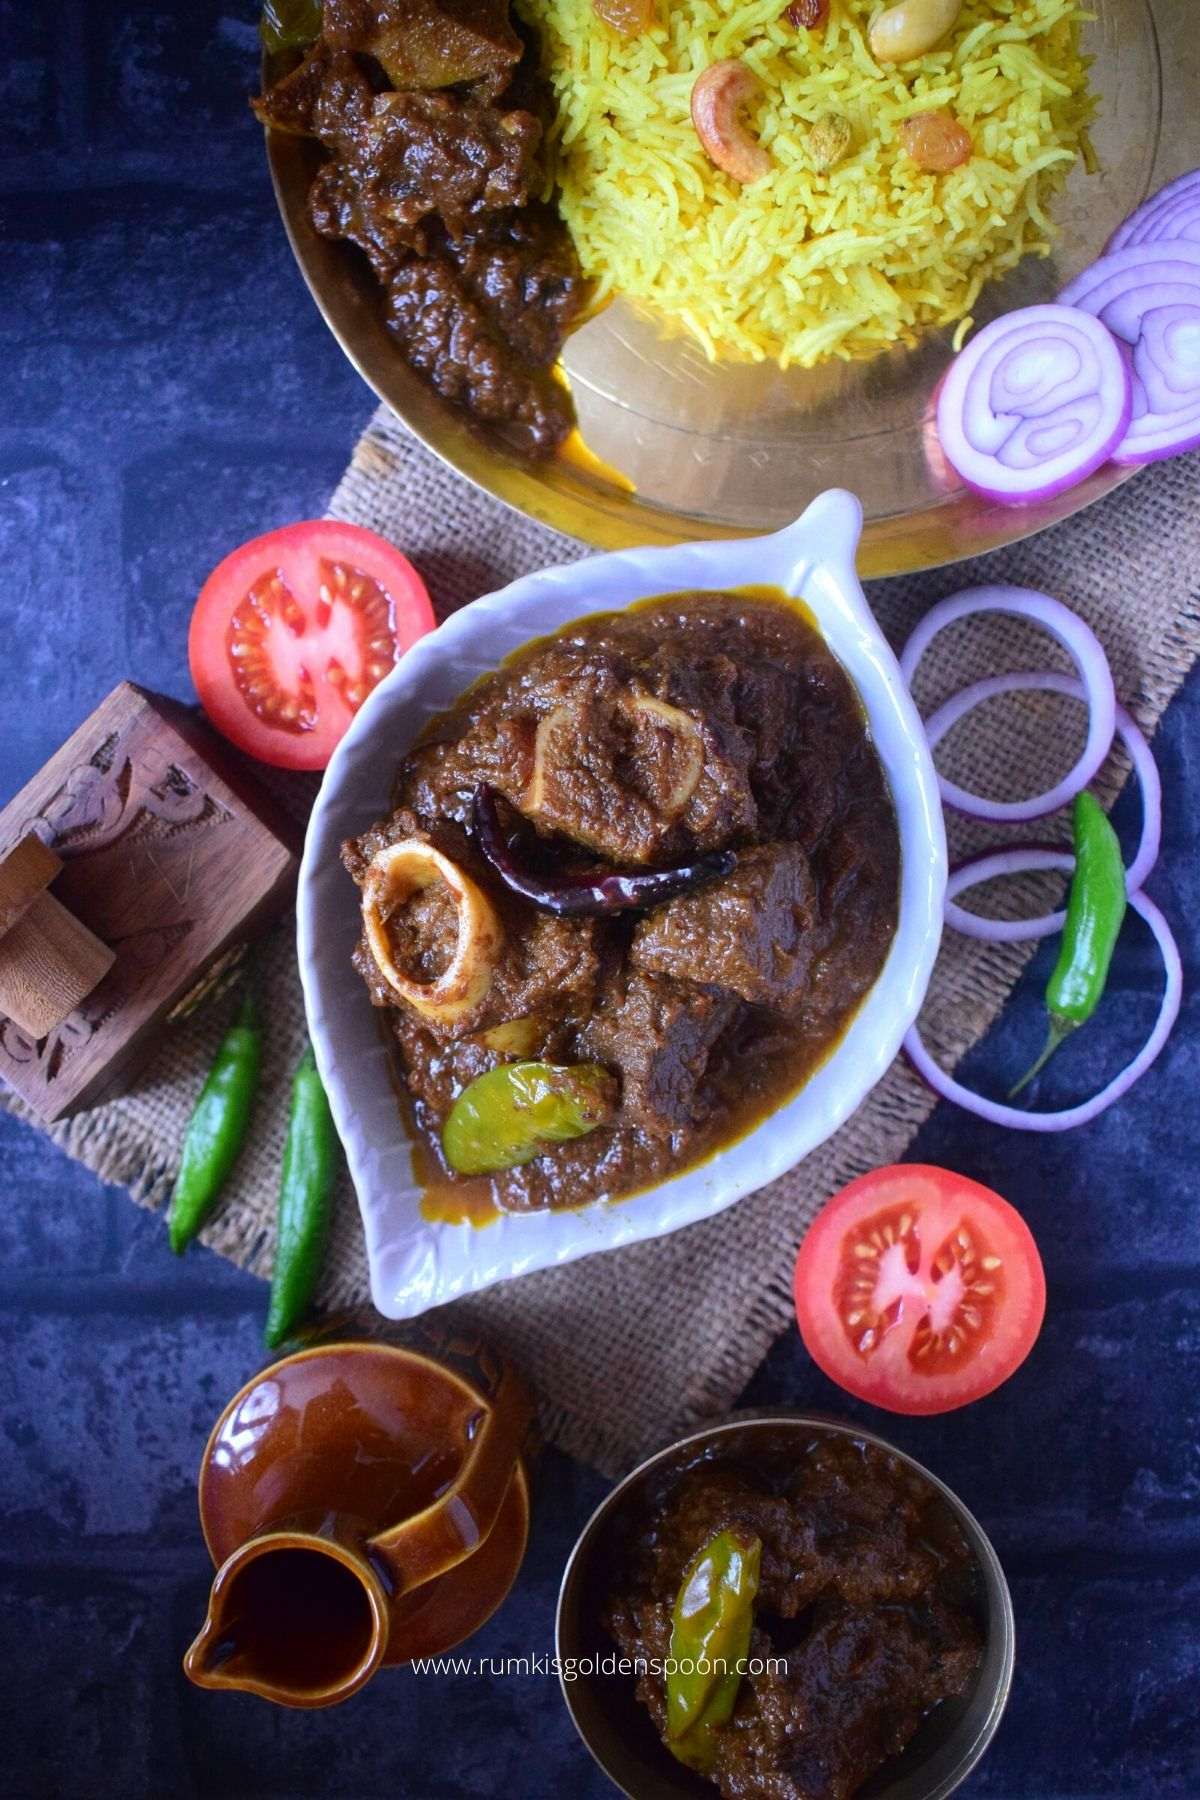 mutton kosha, kosha mangsho, mutton kosha recipe, kosha mangsho recipe, recipe for kosha mangsho, recipe for mutton kosha, bengali mutton kosha, bengali mutton curry recipe, mutton kosha recipe in bengali language, golbari kosha mangsho history, kosha mangsho mutton, how to make mutton kosha, kosha mangsho recipe bengali style, mutton kosha mangsho, how to make kosha mangsho, authentic kosha mangsho recipe, mutton kosha bengali style, bengali mutton kosha recipe, mutton kosha in bengali, how to cook mutton kosha, mutton kosha recipe bengali, kosha mangsho recipe in bengali, kosha mangsho bengali style, what is kosha mangsho, how to make mutton liver, mutton kosha mangsho recipe, kosha pathar mangsho recipe, golbari kosha mangsho kolkata recipe, kosha mangsho golbari, kosha mangsho golbari recipe, how to prepare mutton kosha, mutton kasha, mutton kassa, kasha mangsho, Rumki's Golden Spoon